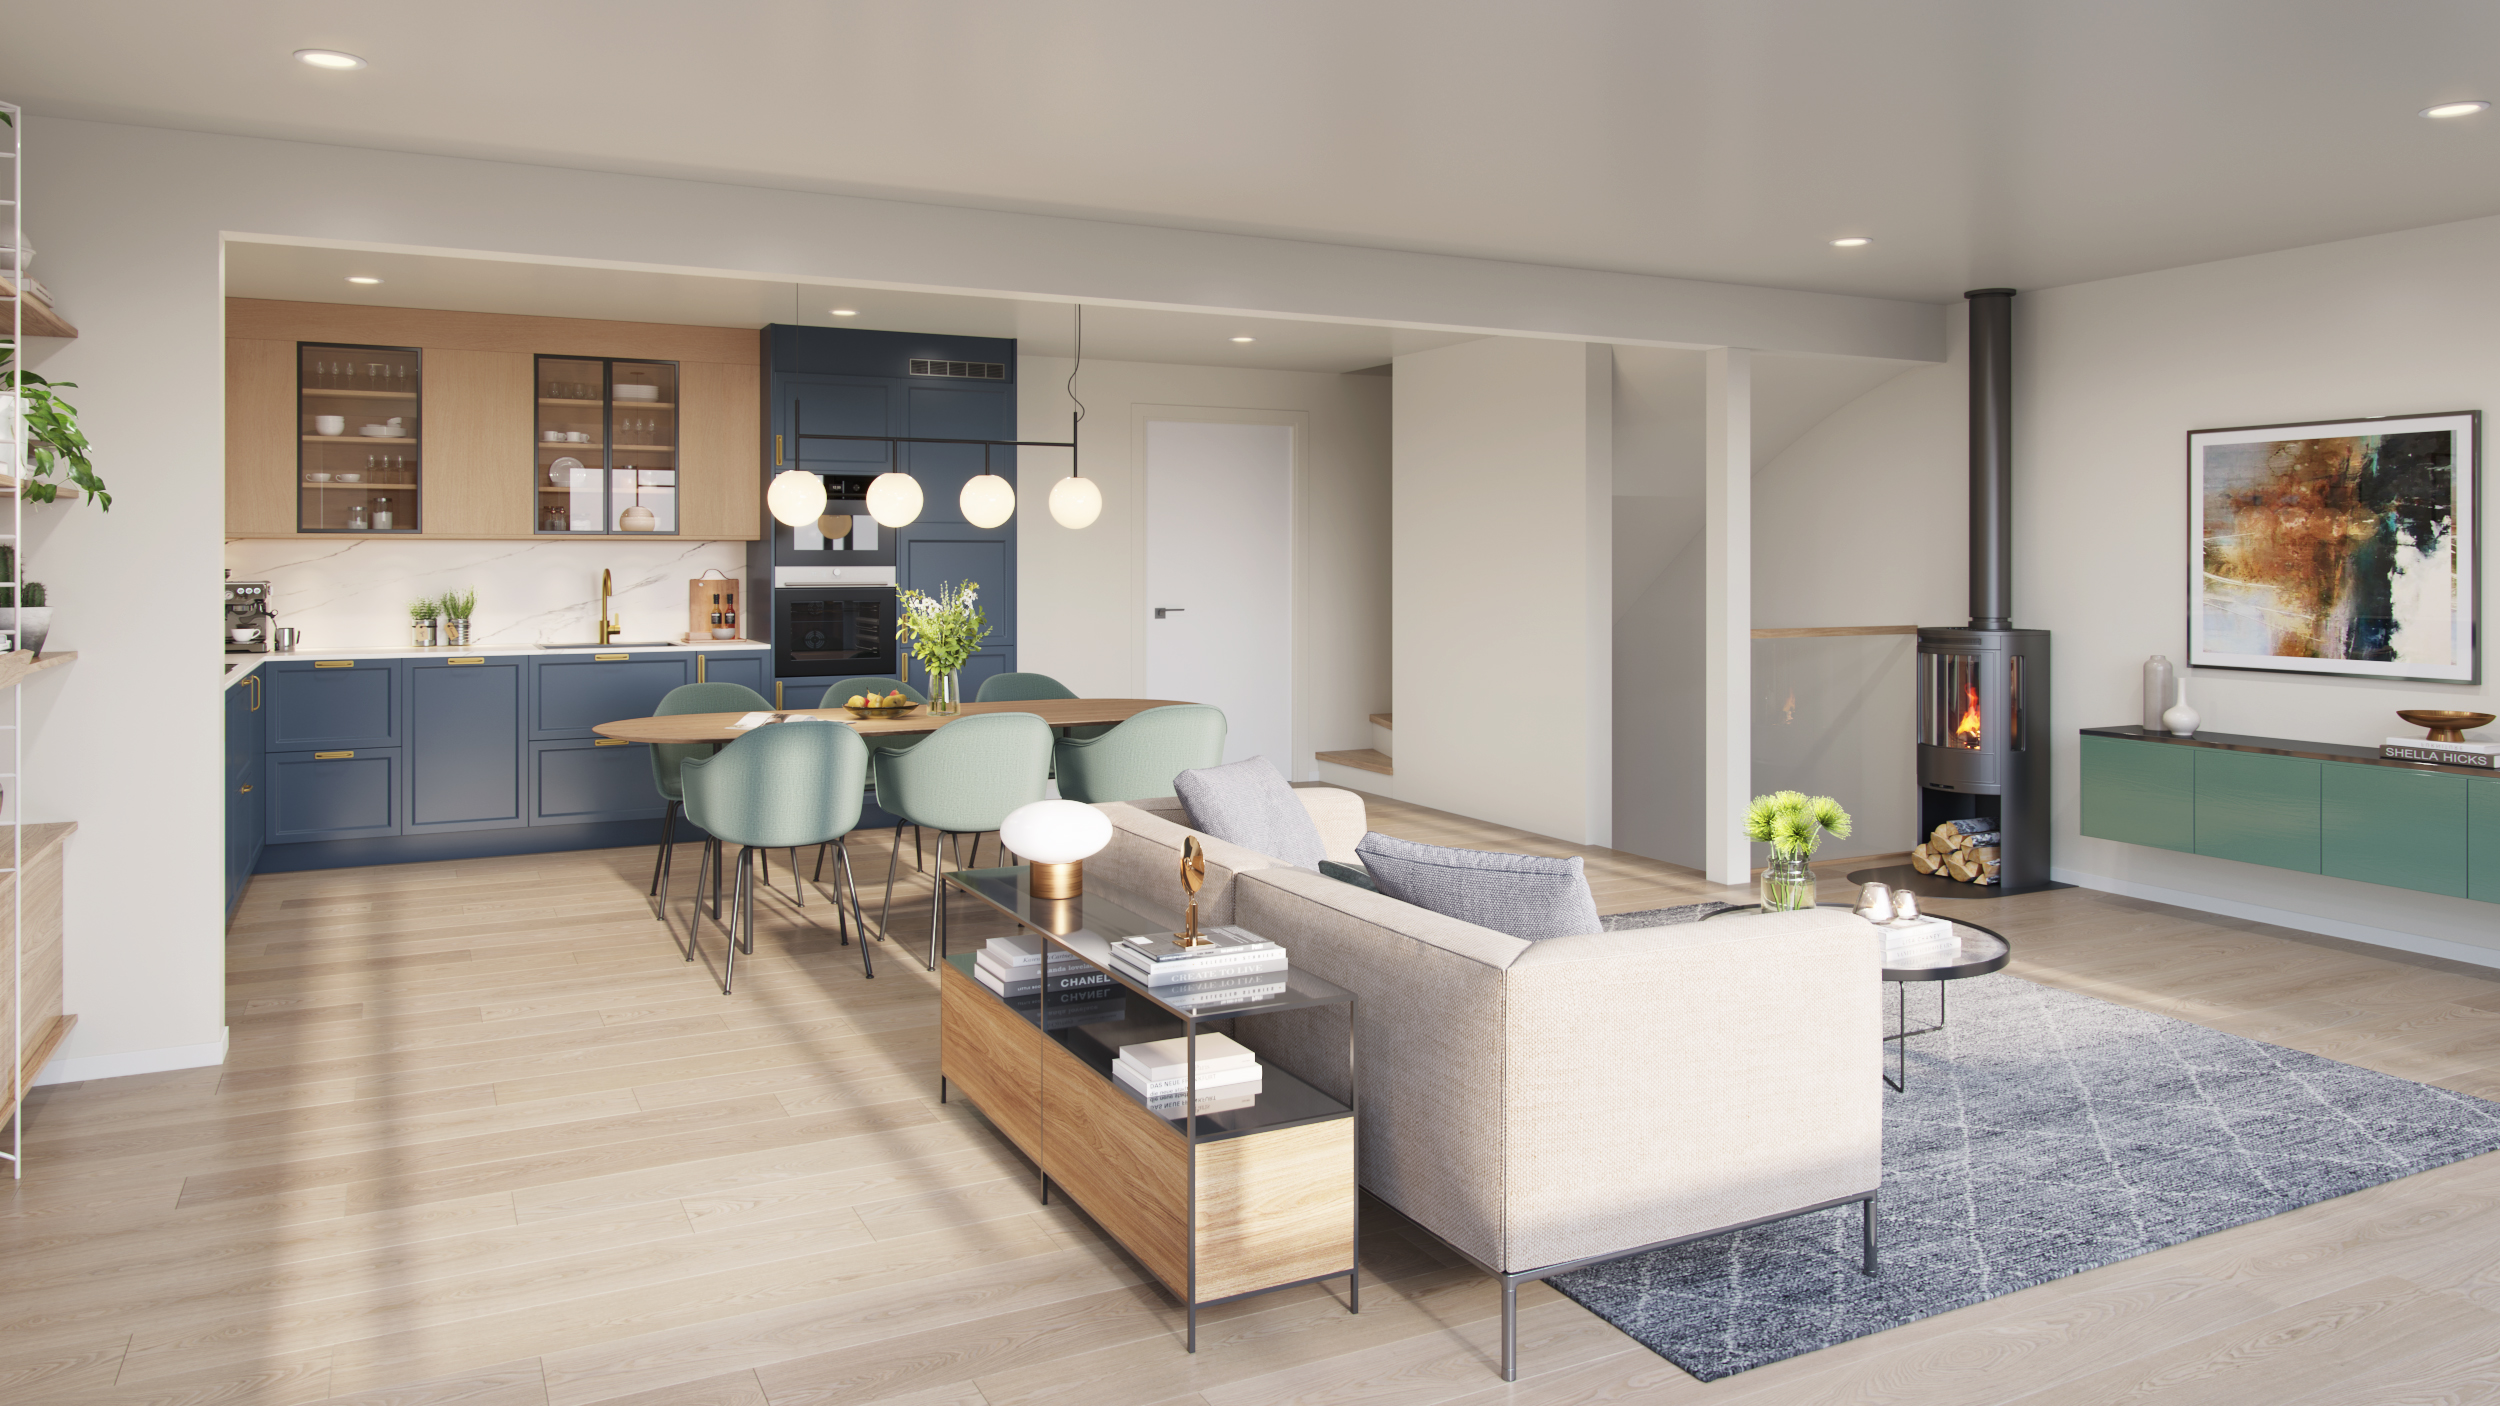 Stue og kjøkken i samme rom - moderne stil med lyse farger